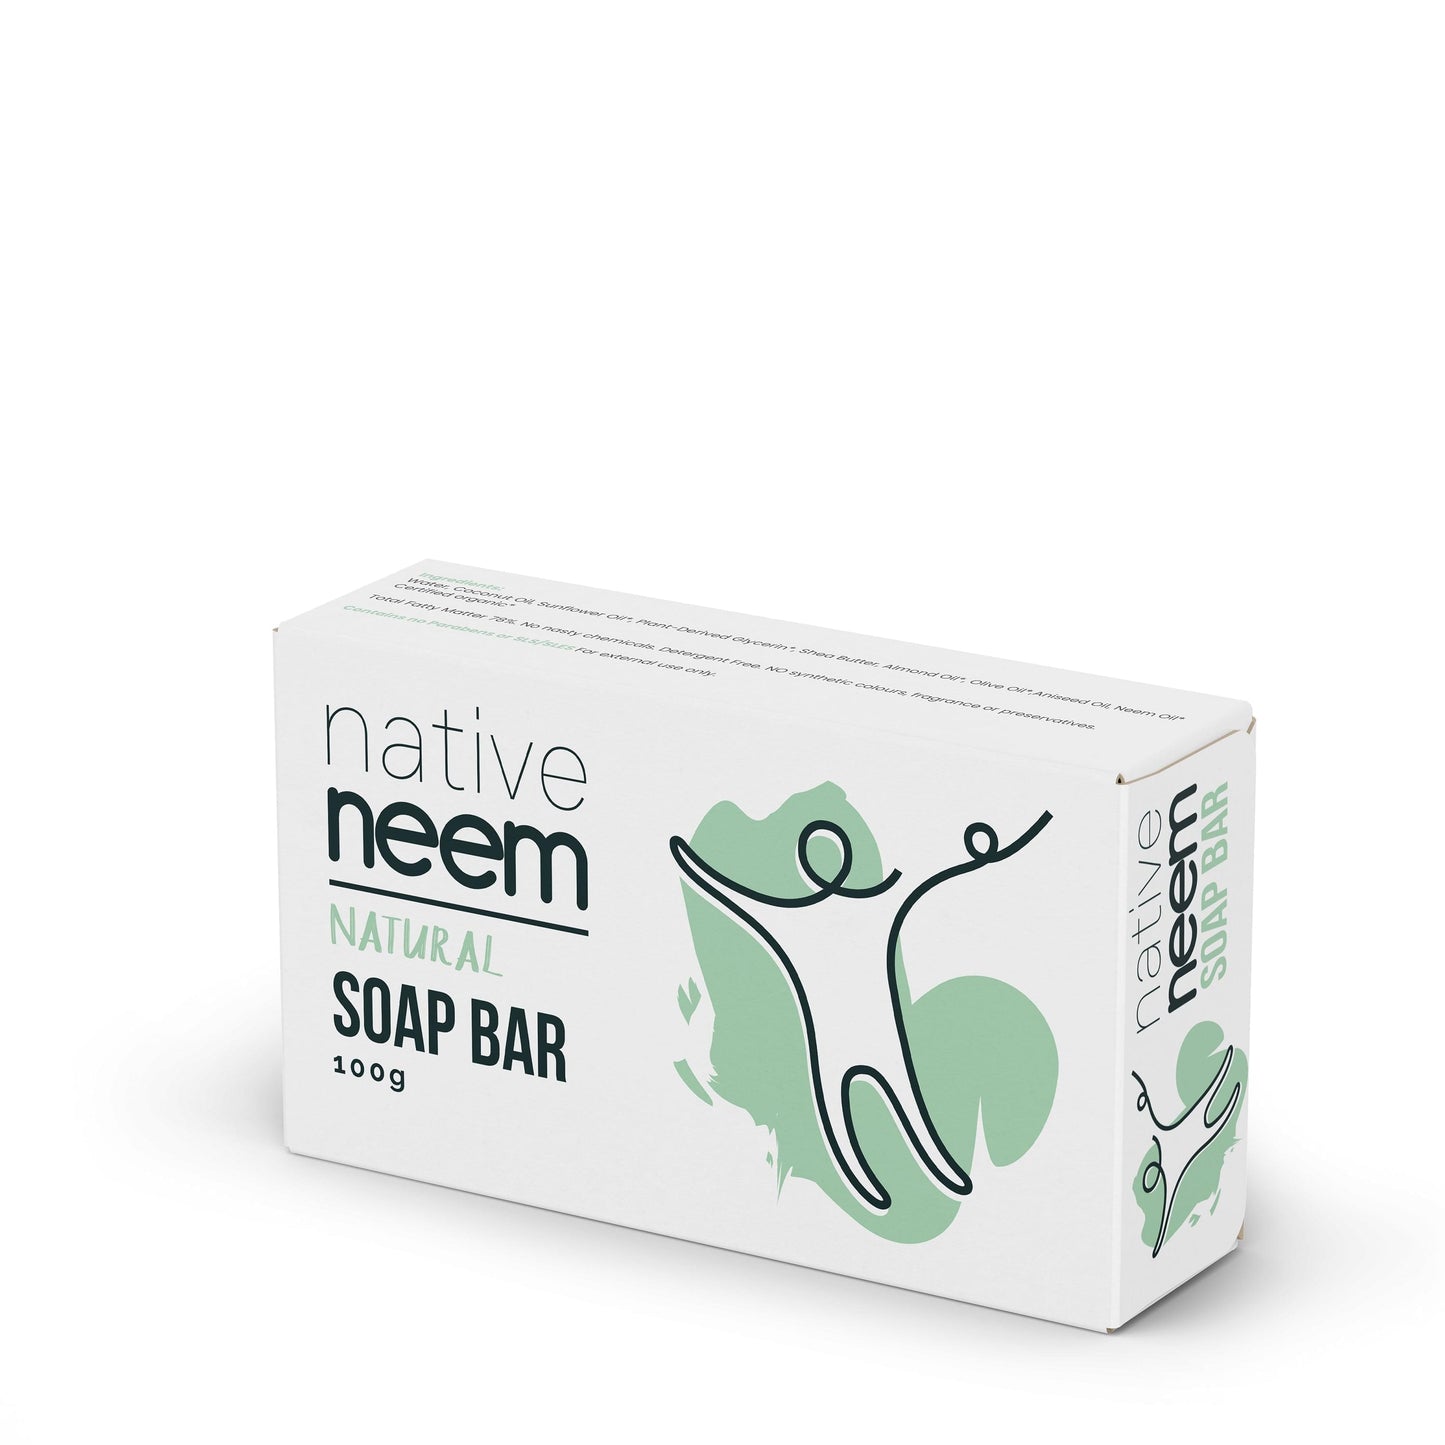 Organic Neem Soap Bar 100g - NativeNeem